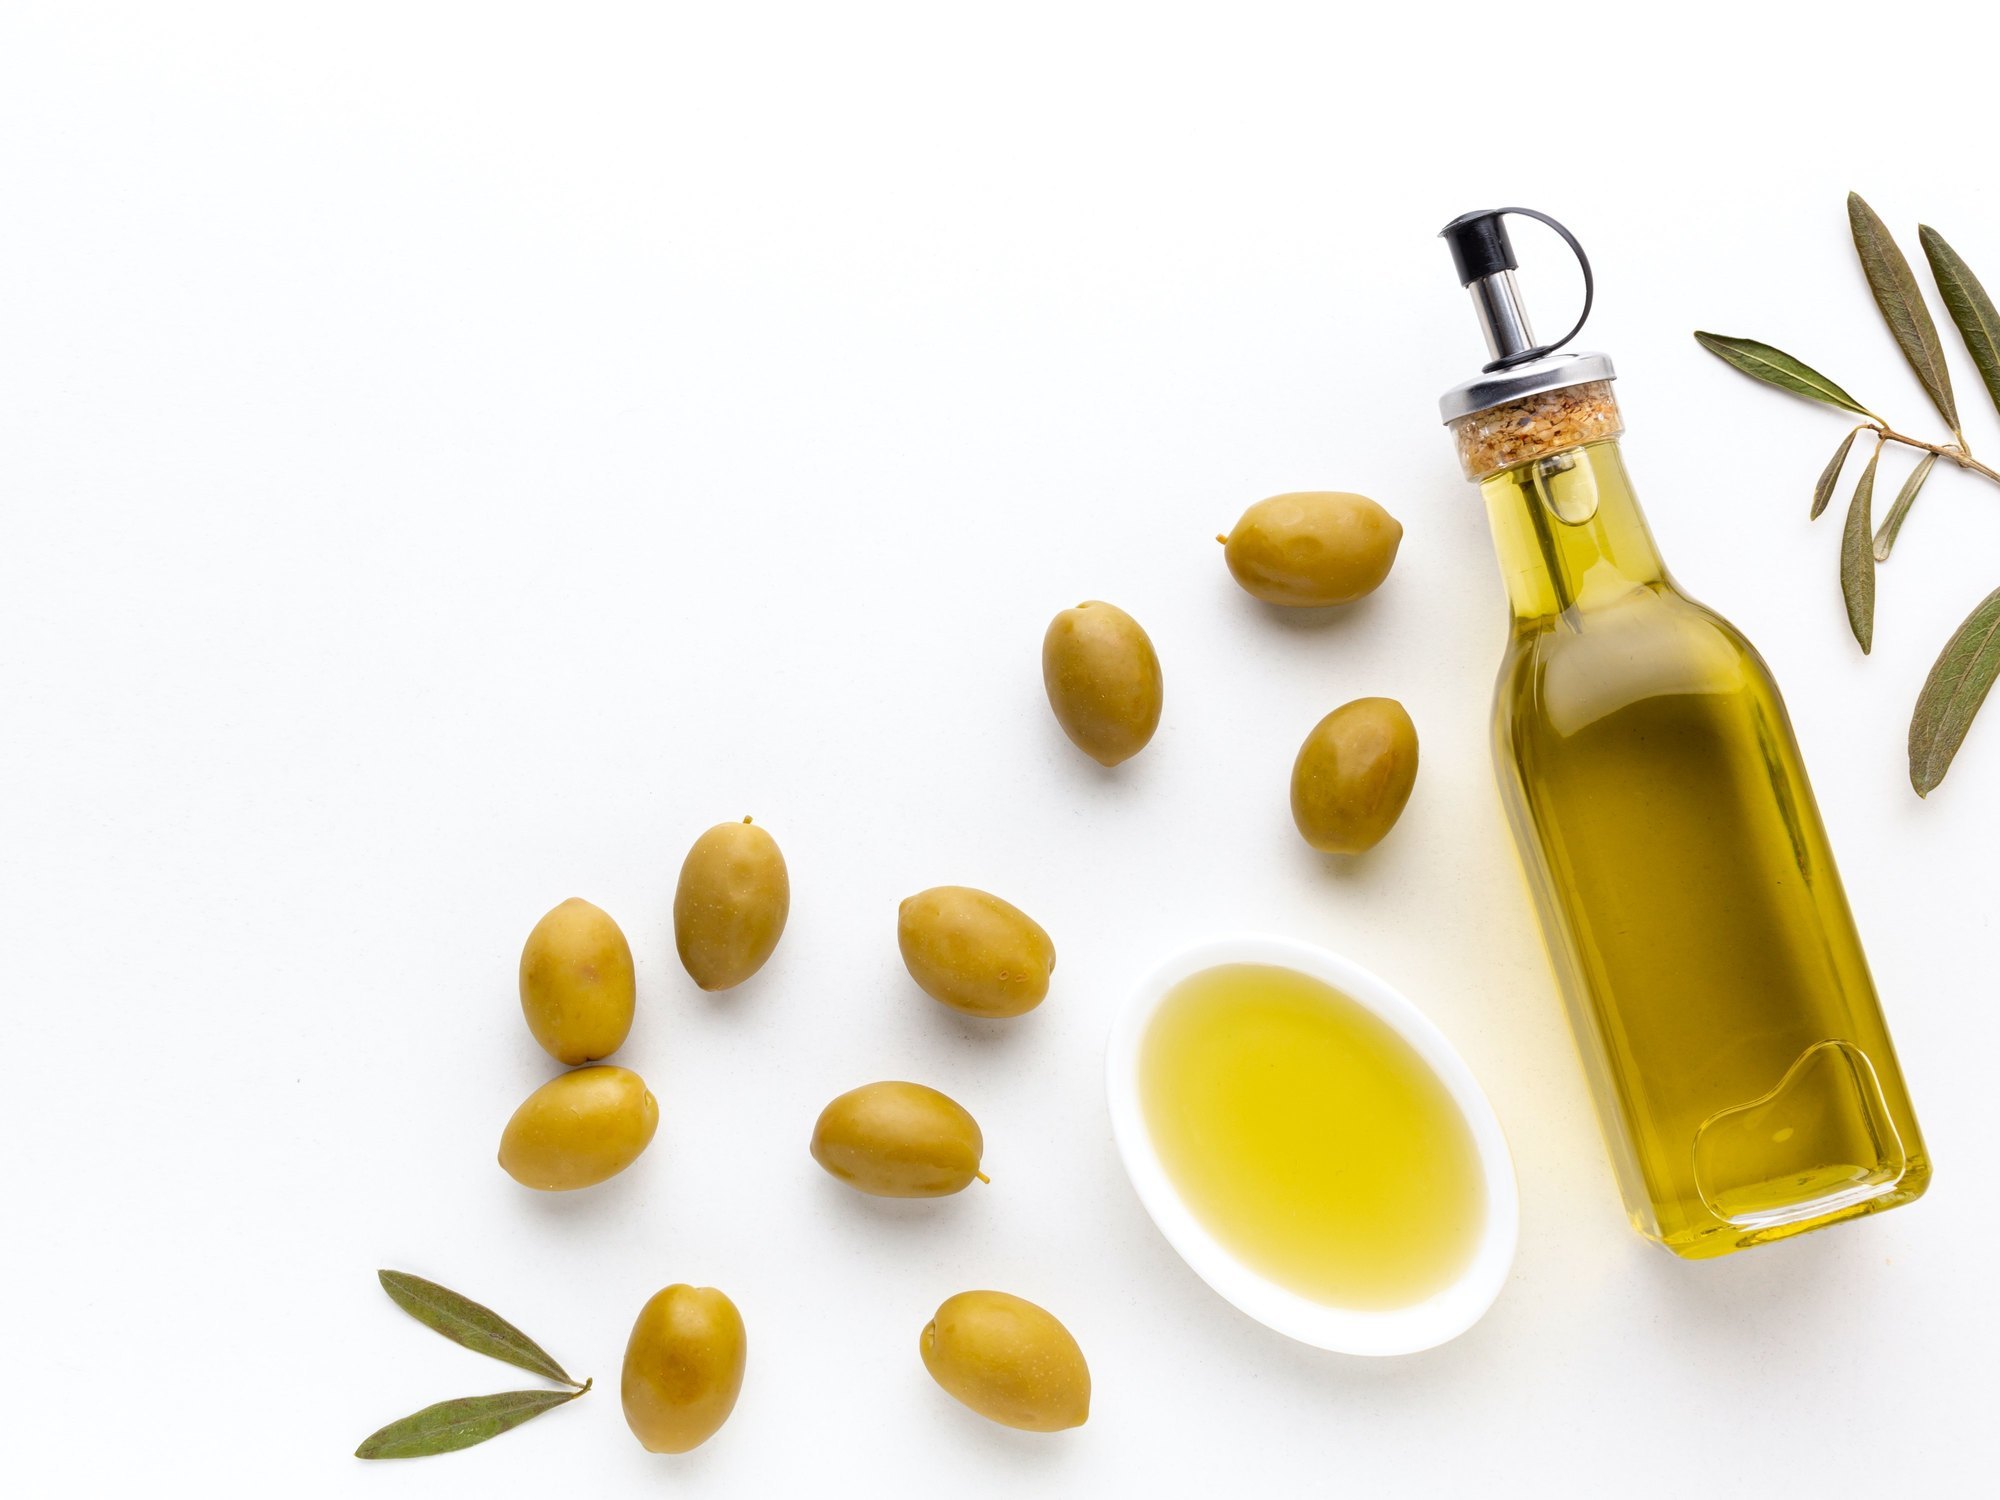 Cual es el mejor aceite de oliva virgen extra